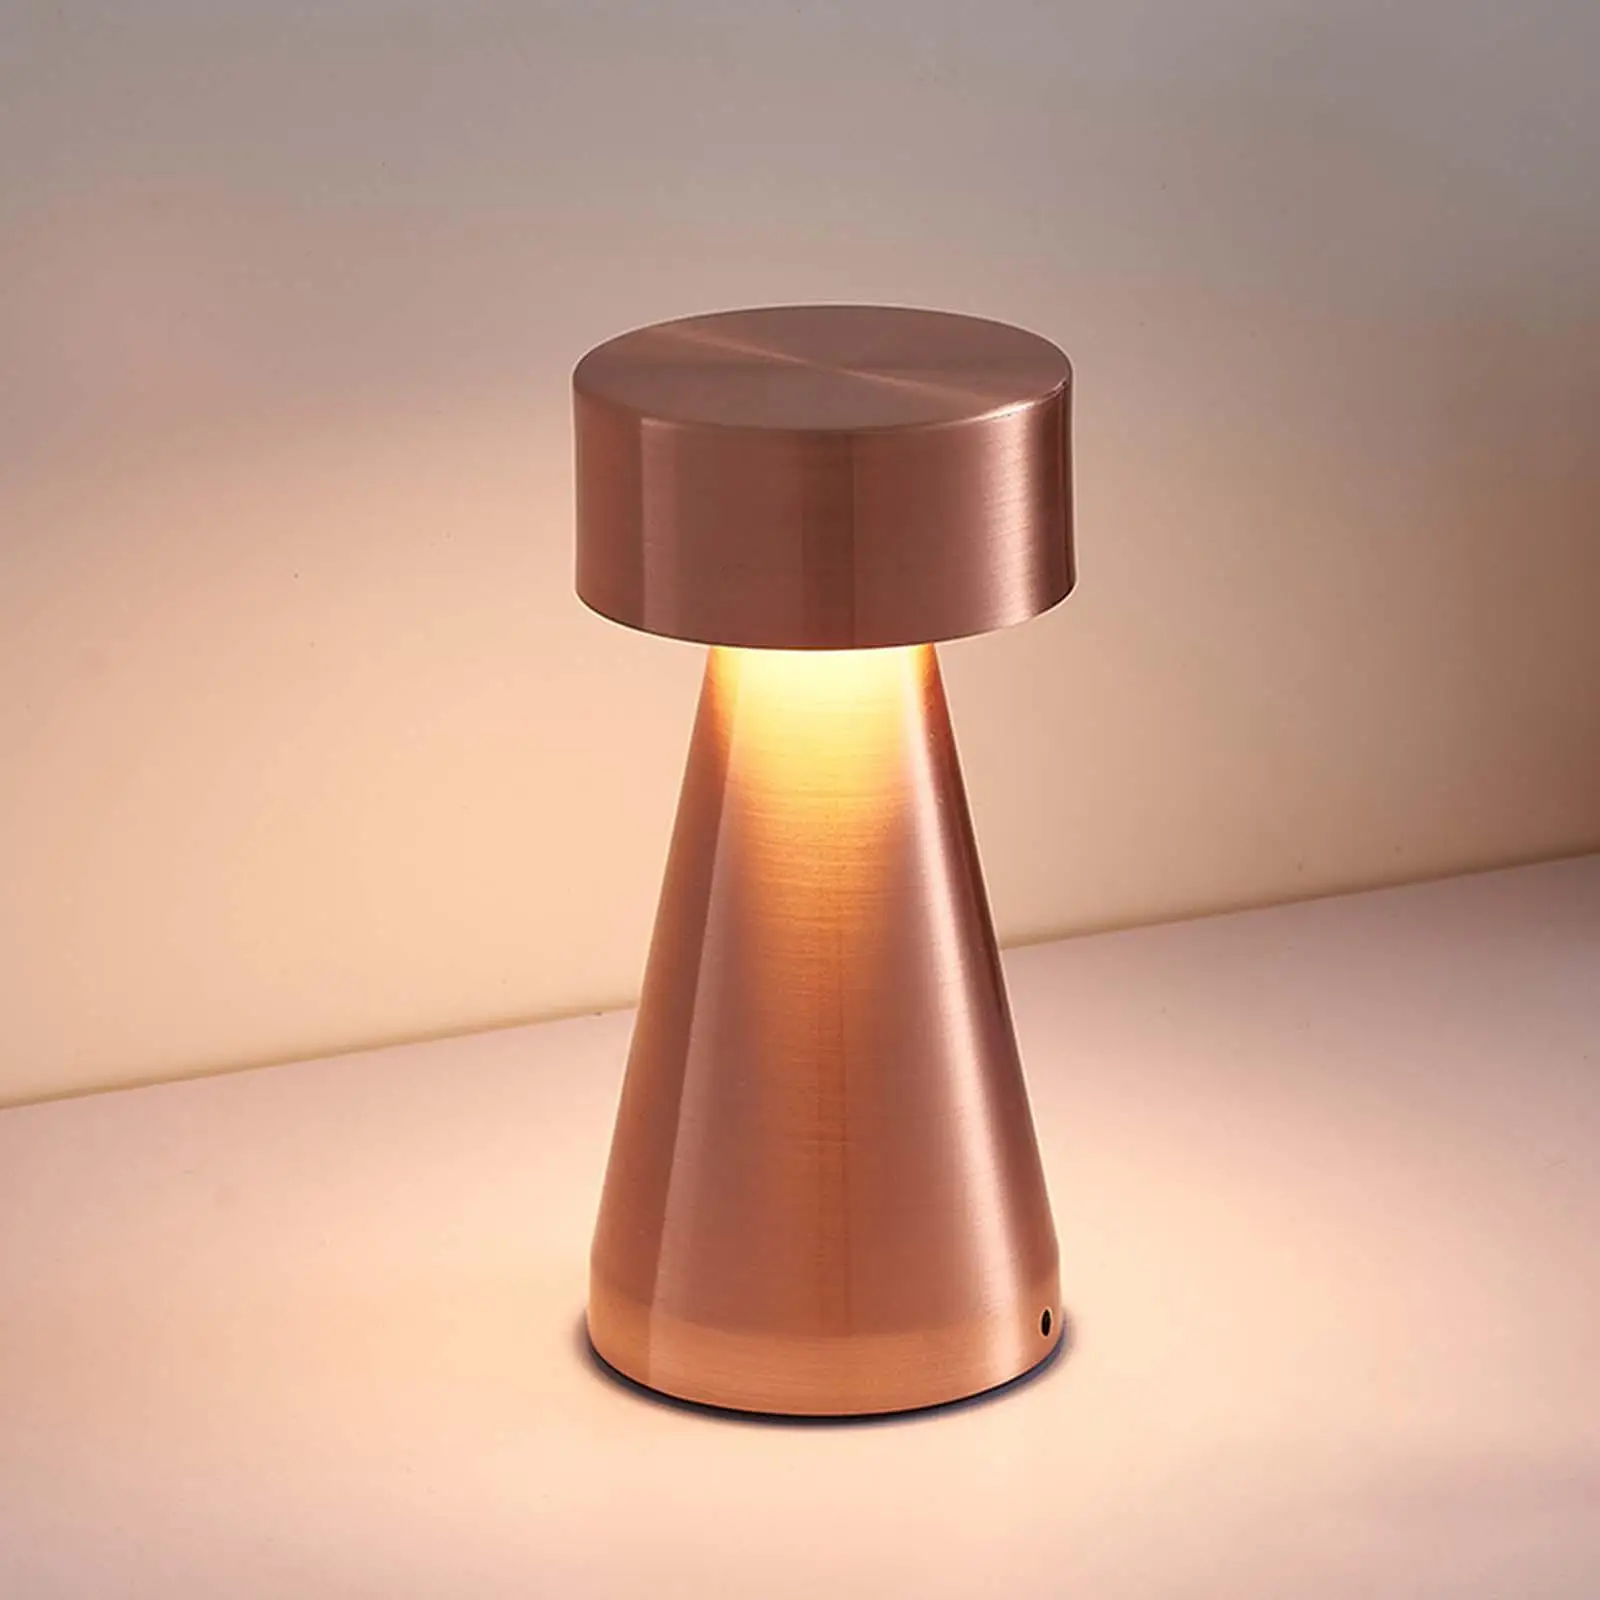 Bar Coffee Table Lamp Touch Sensor Bedside Lamps Dumbbell USB 3 Modes LED Desk Lamp for Nursery Living Room Restaurant